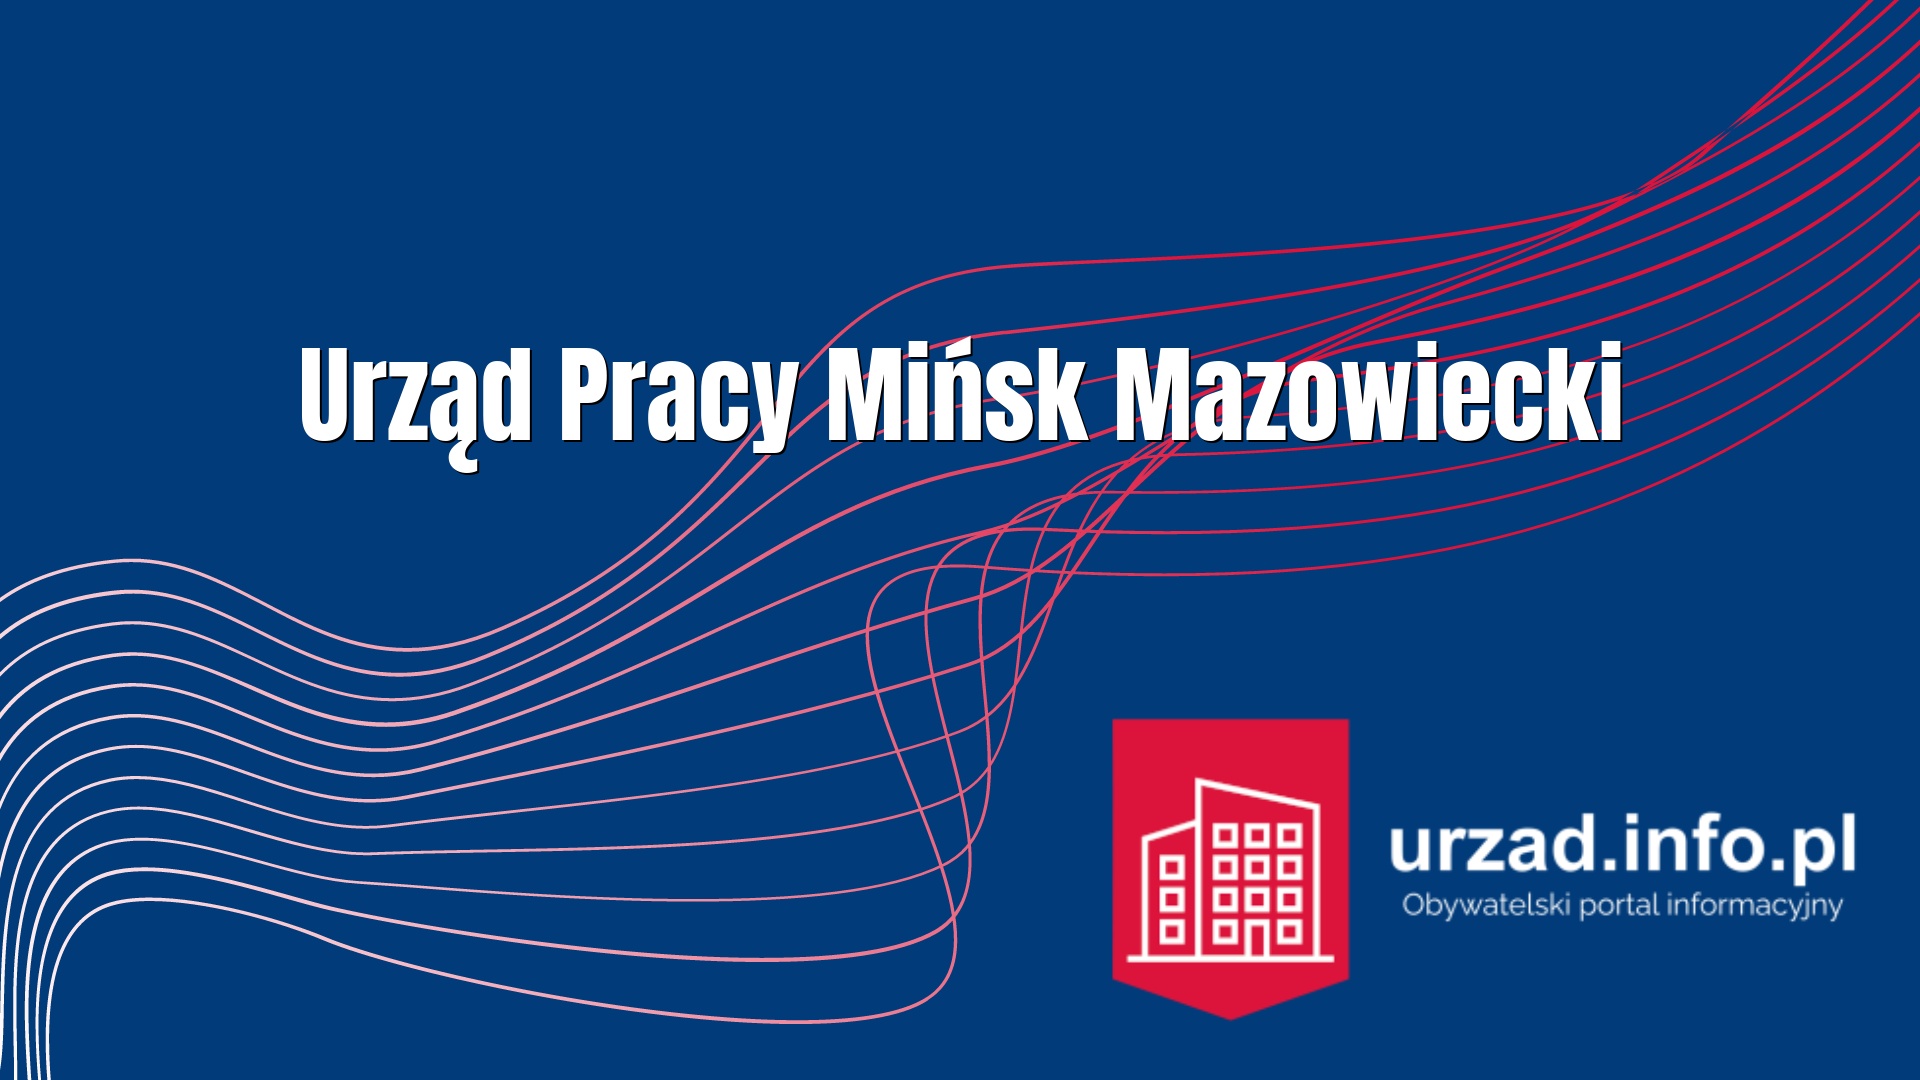 PUP Mińsk Mazowiecki – Powiatowy Urząd Pracy Mińsk Mazowiecki